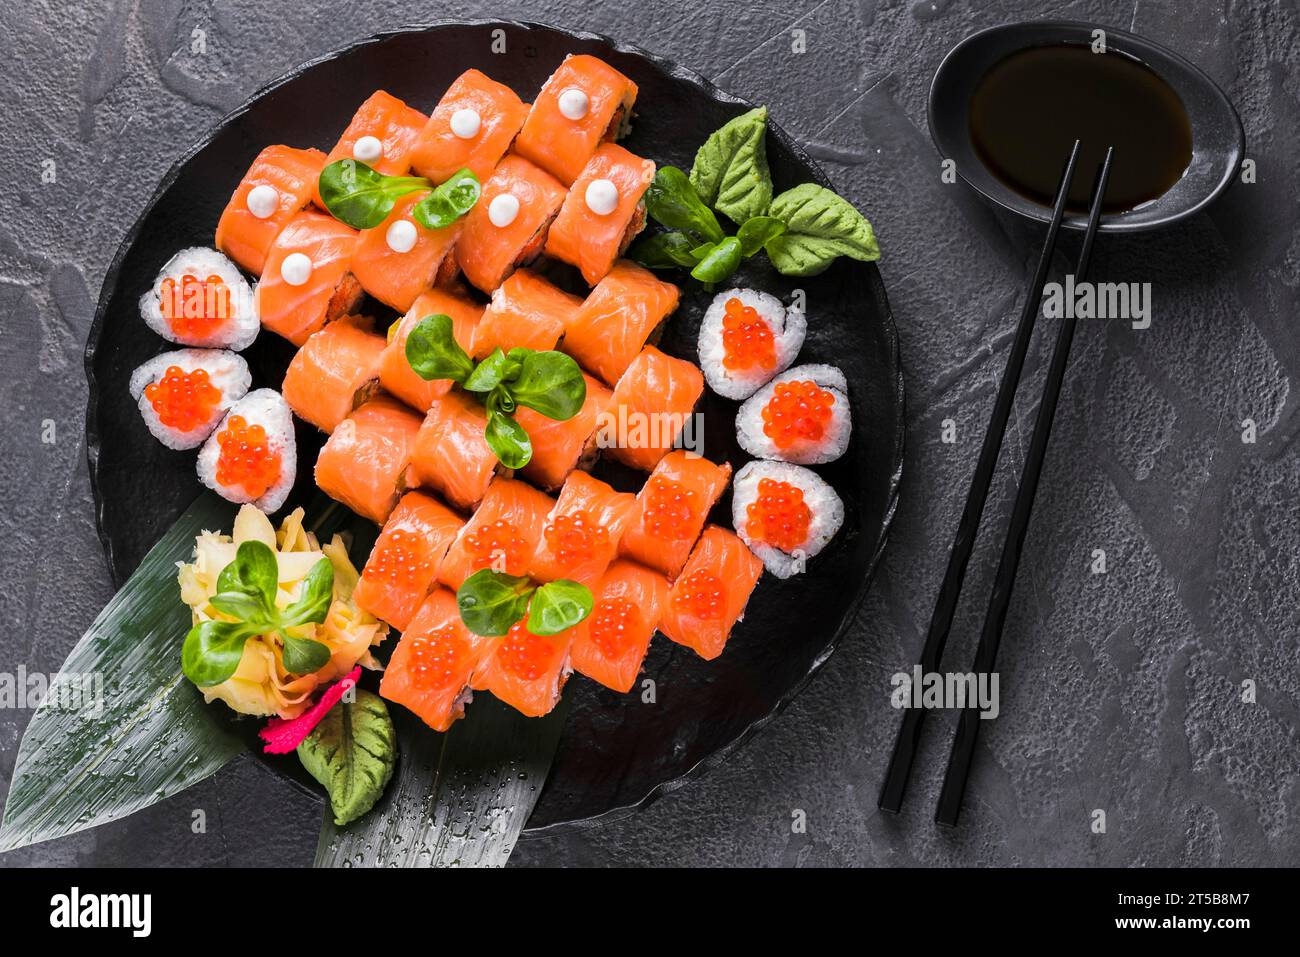 Sushi dish asian restaurant 3 Stock Photo